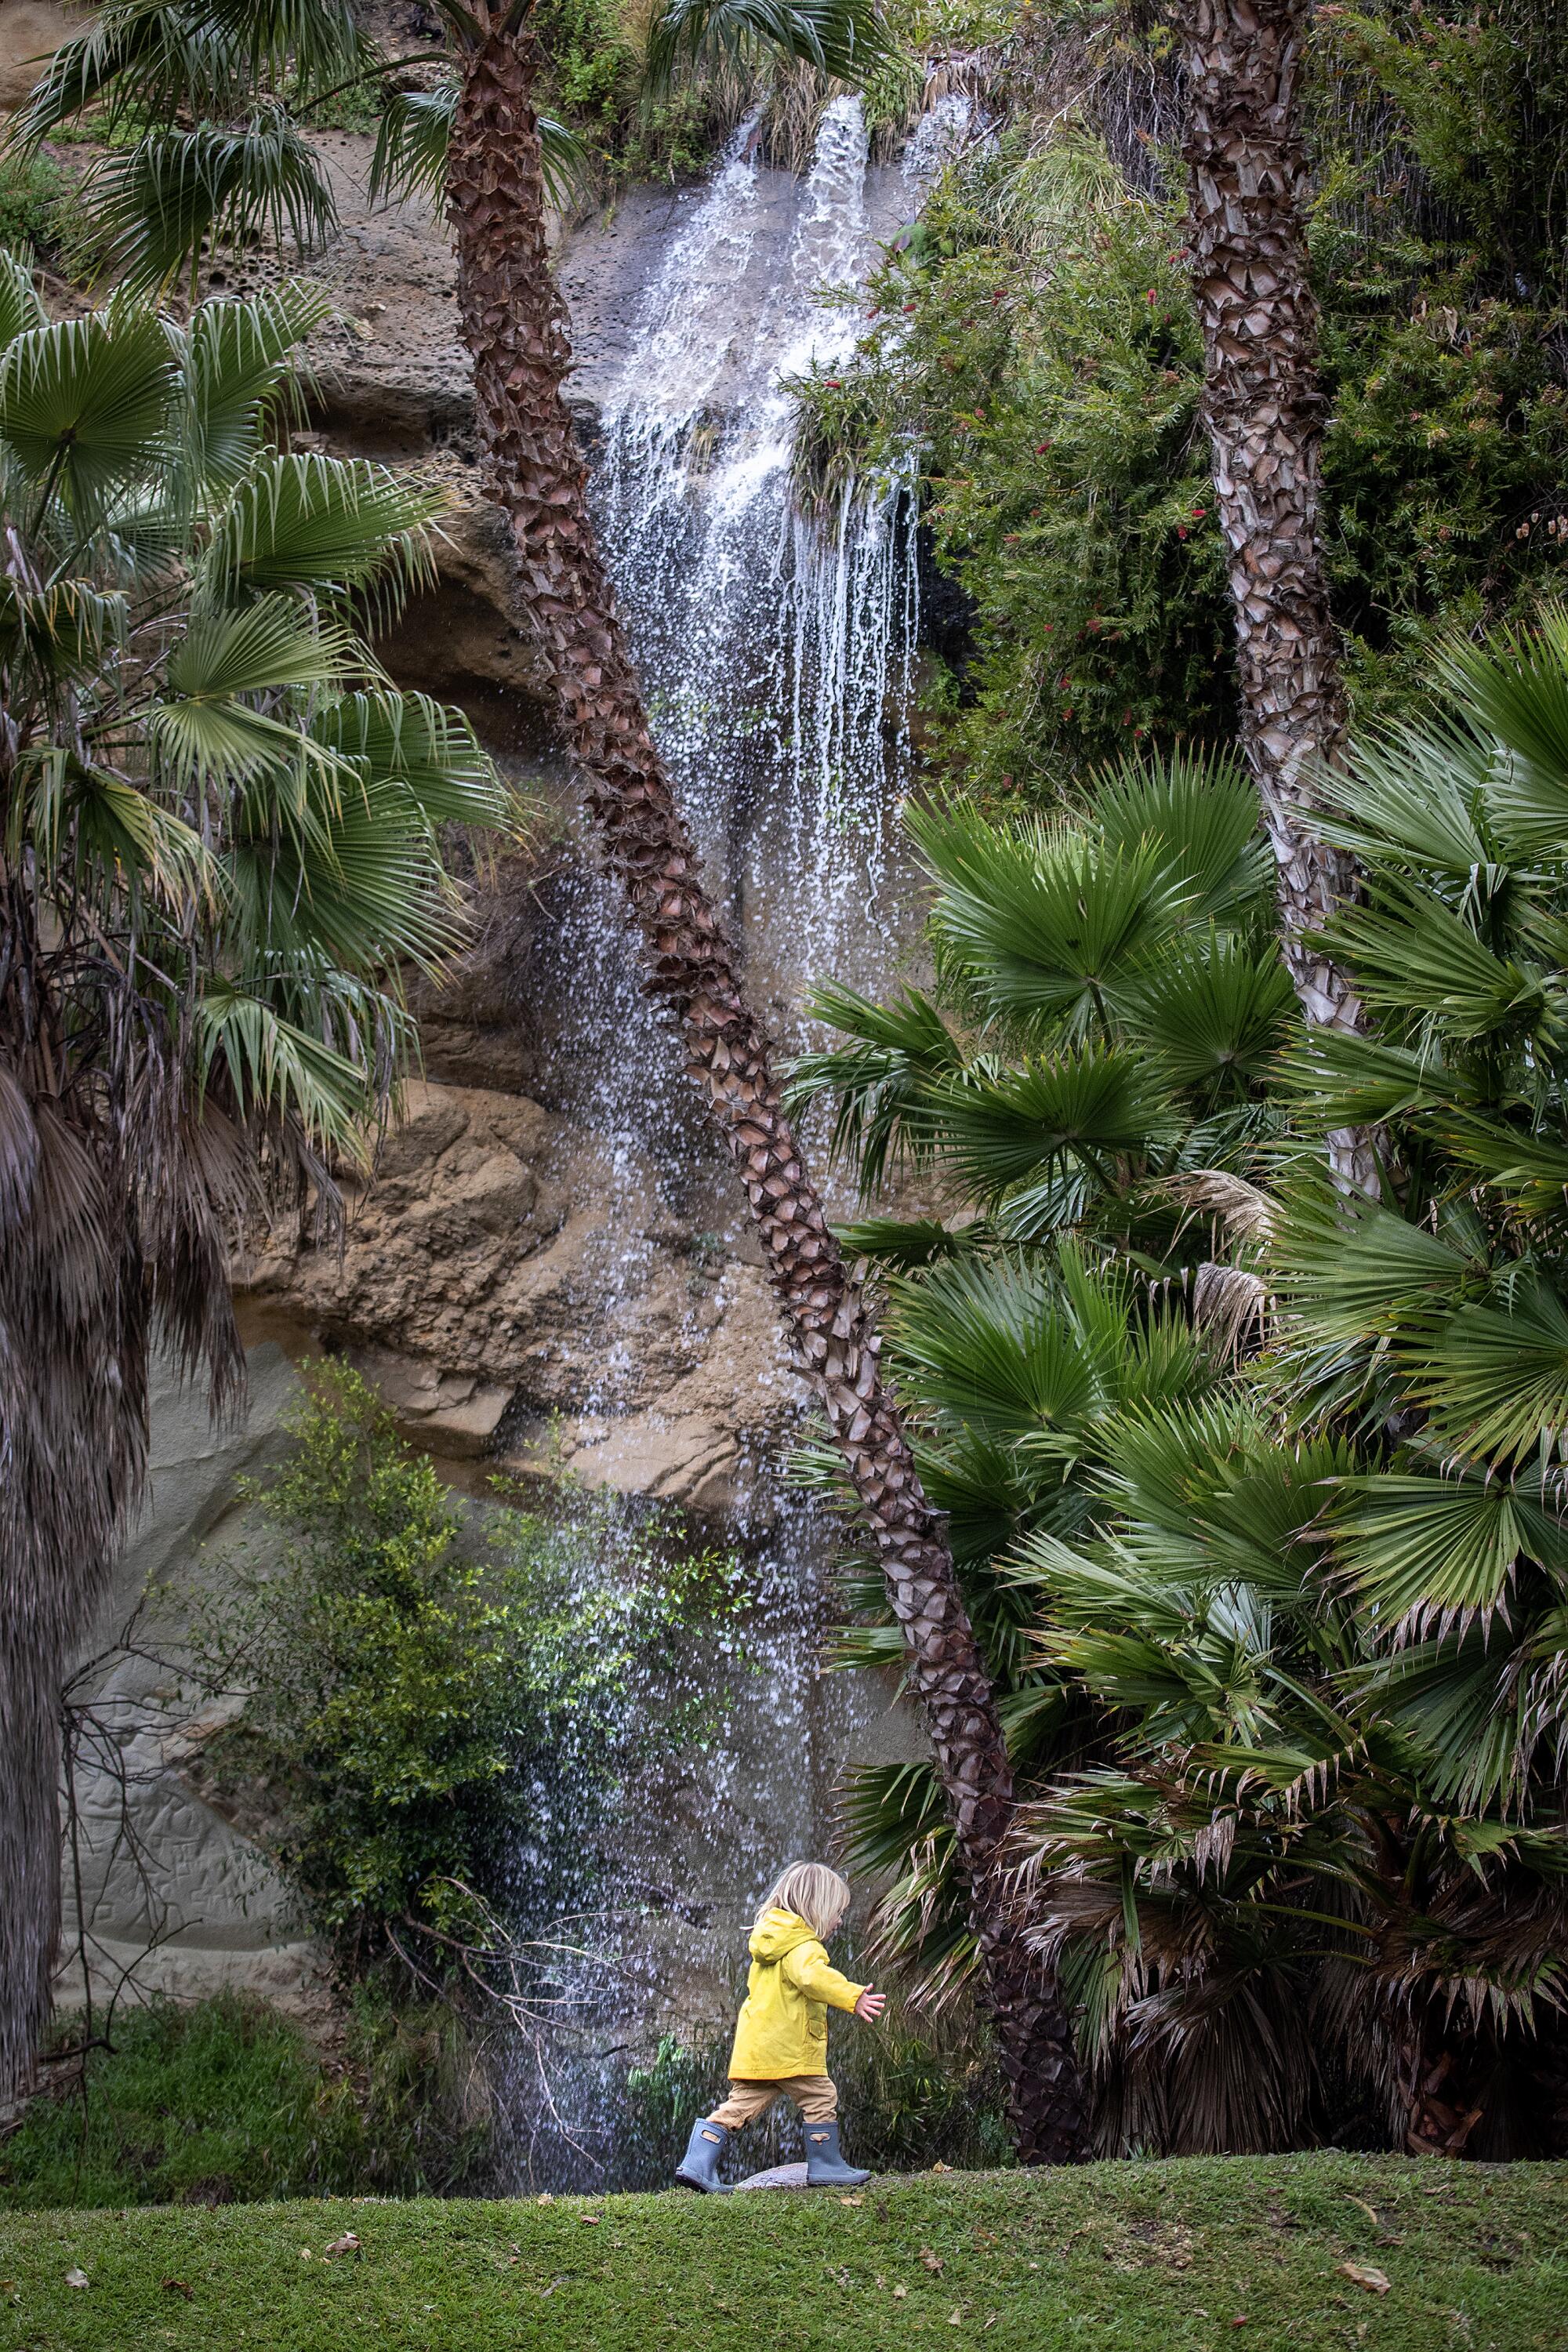 Ein Kind in einem gelben Regenmantel geht unter einem kleinen Wasserfall hindurch. 